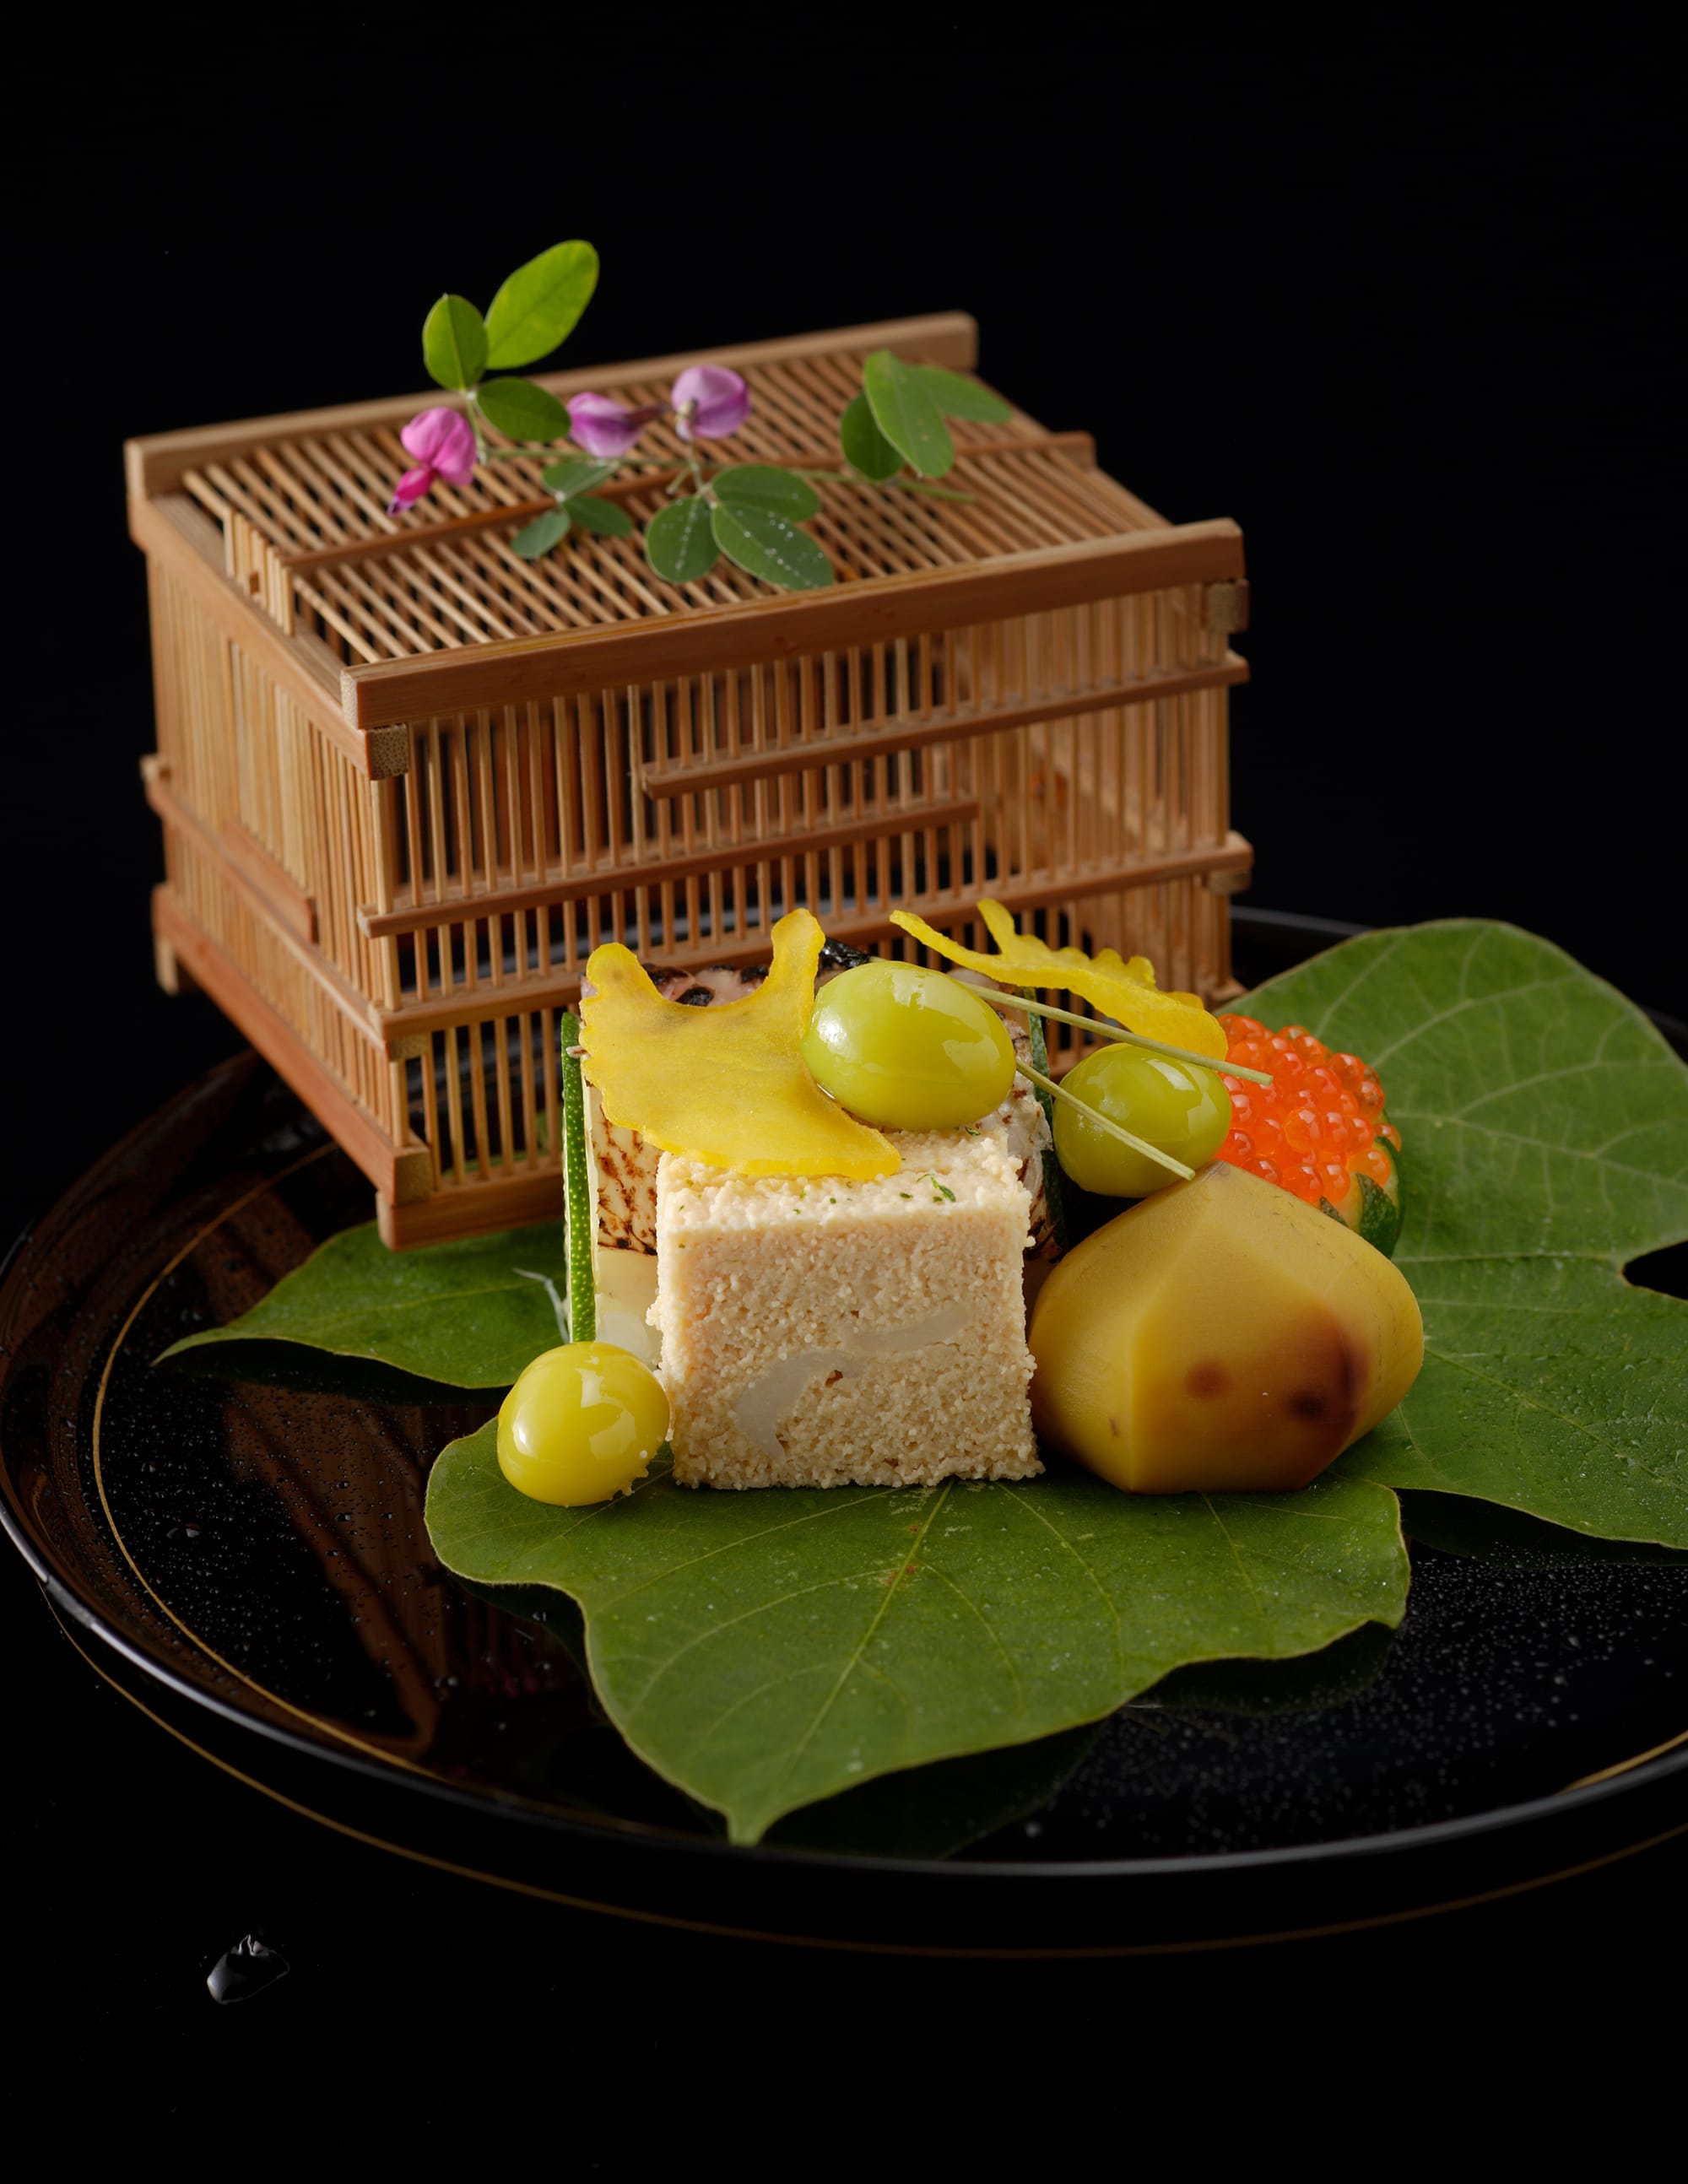 9月の八寸。一世紀にわたり受け継がれてきた菊乃井の料理。四季折々の日本食材を際立たせる手法で調理し、丁寧かつ精巧に盛り付けられている。